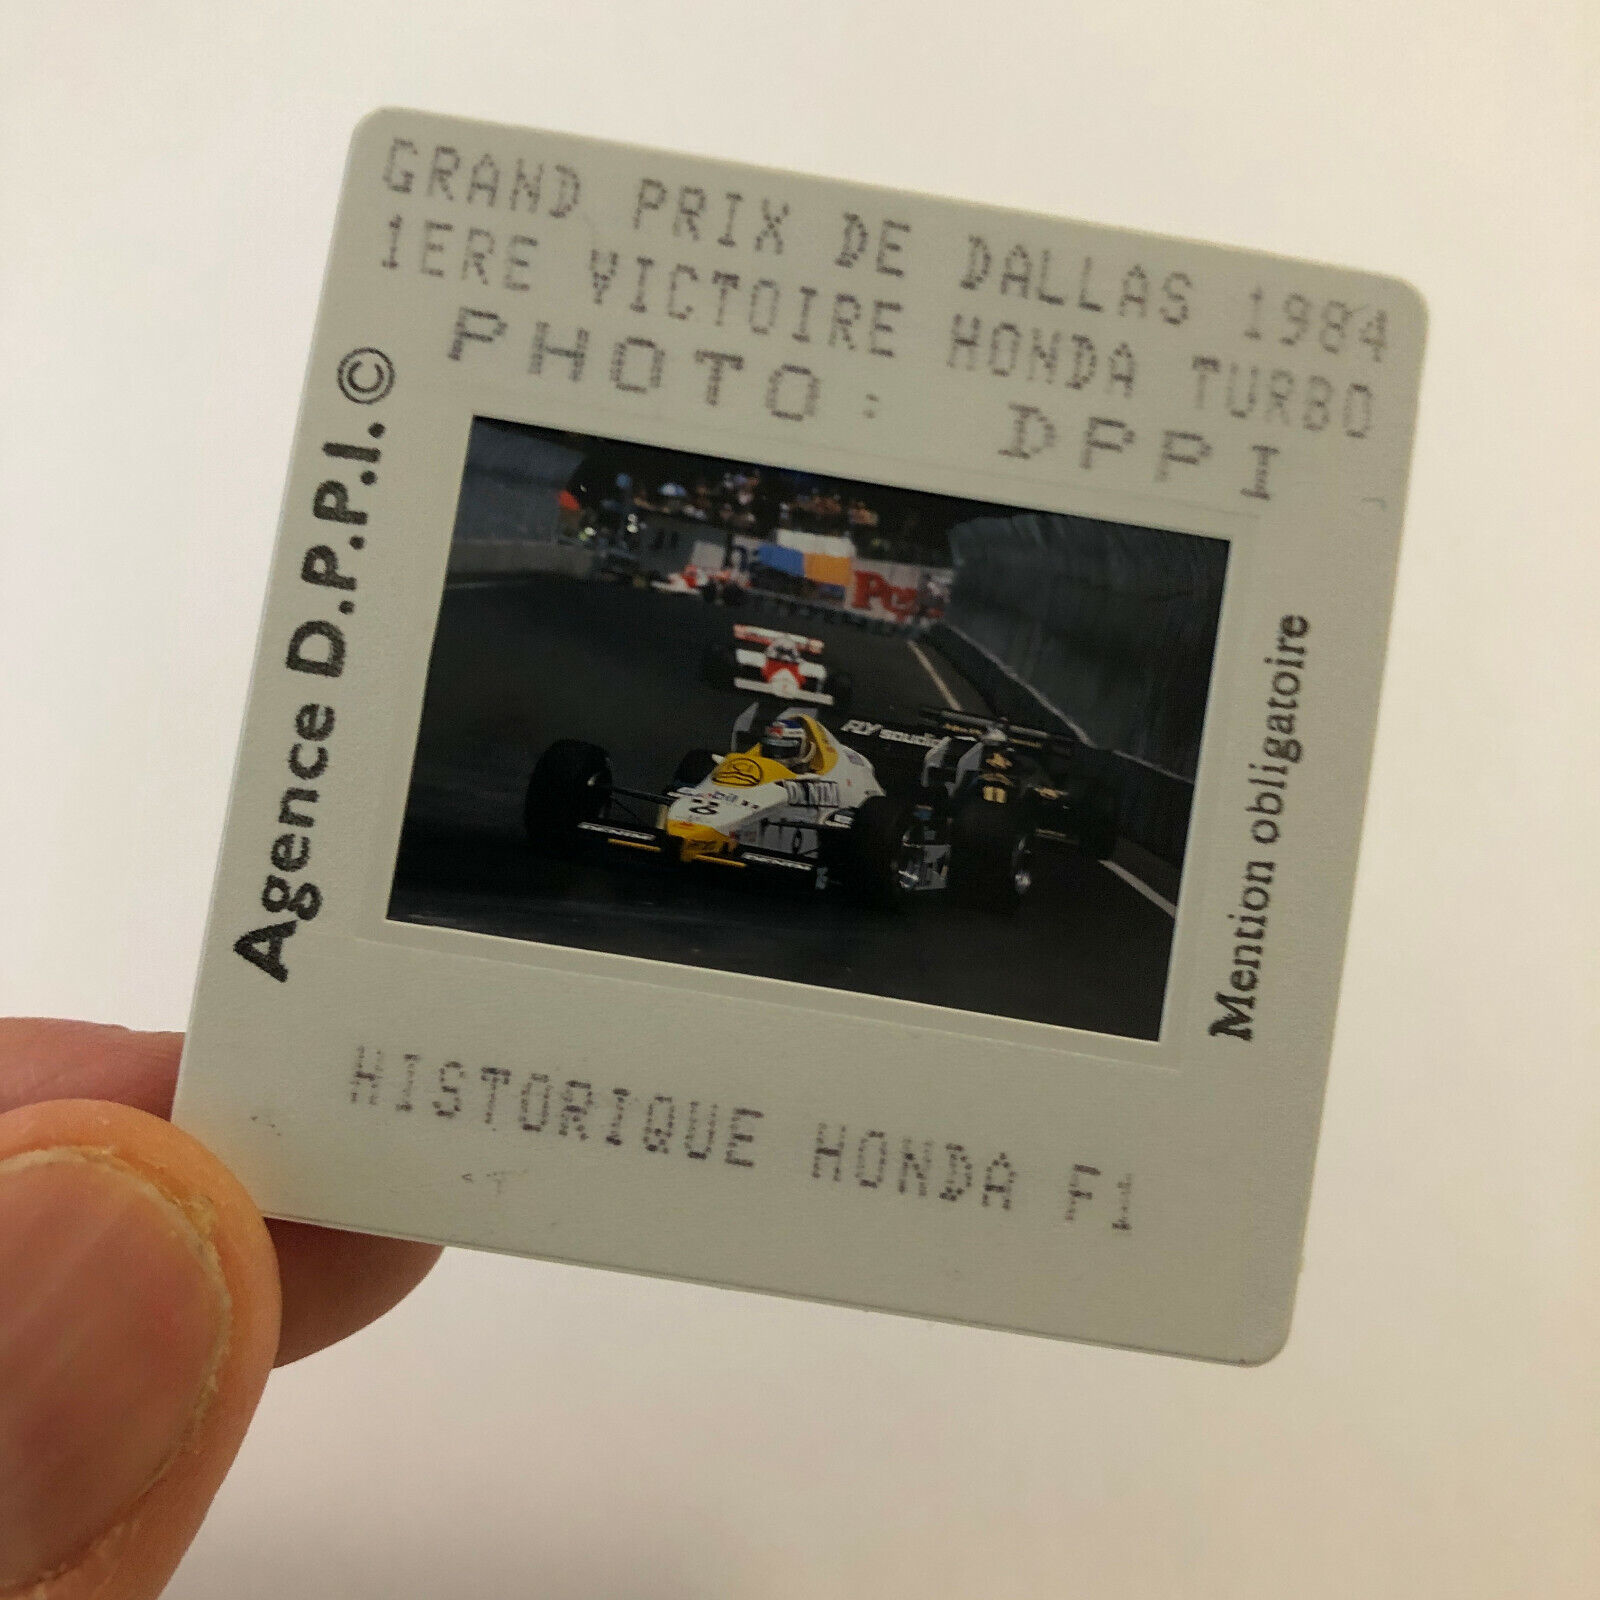 1984 Dallas Grand Prix Race Honda DPPI 35MM Press Photo Slide Honda F1 Racing 